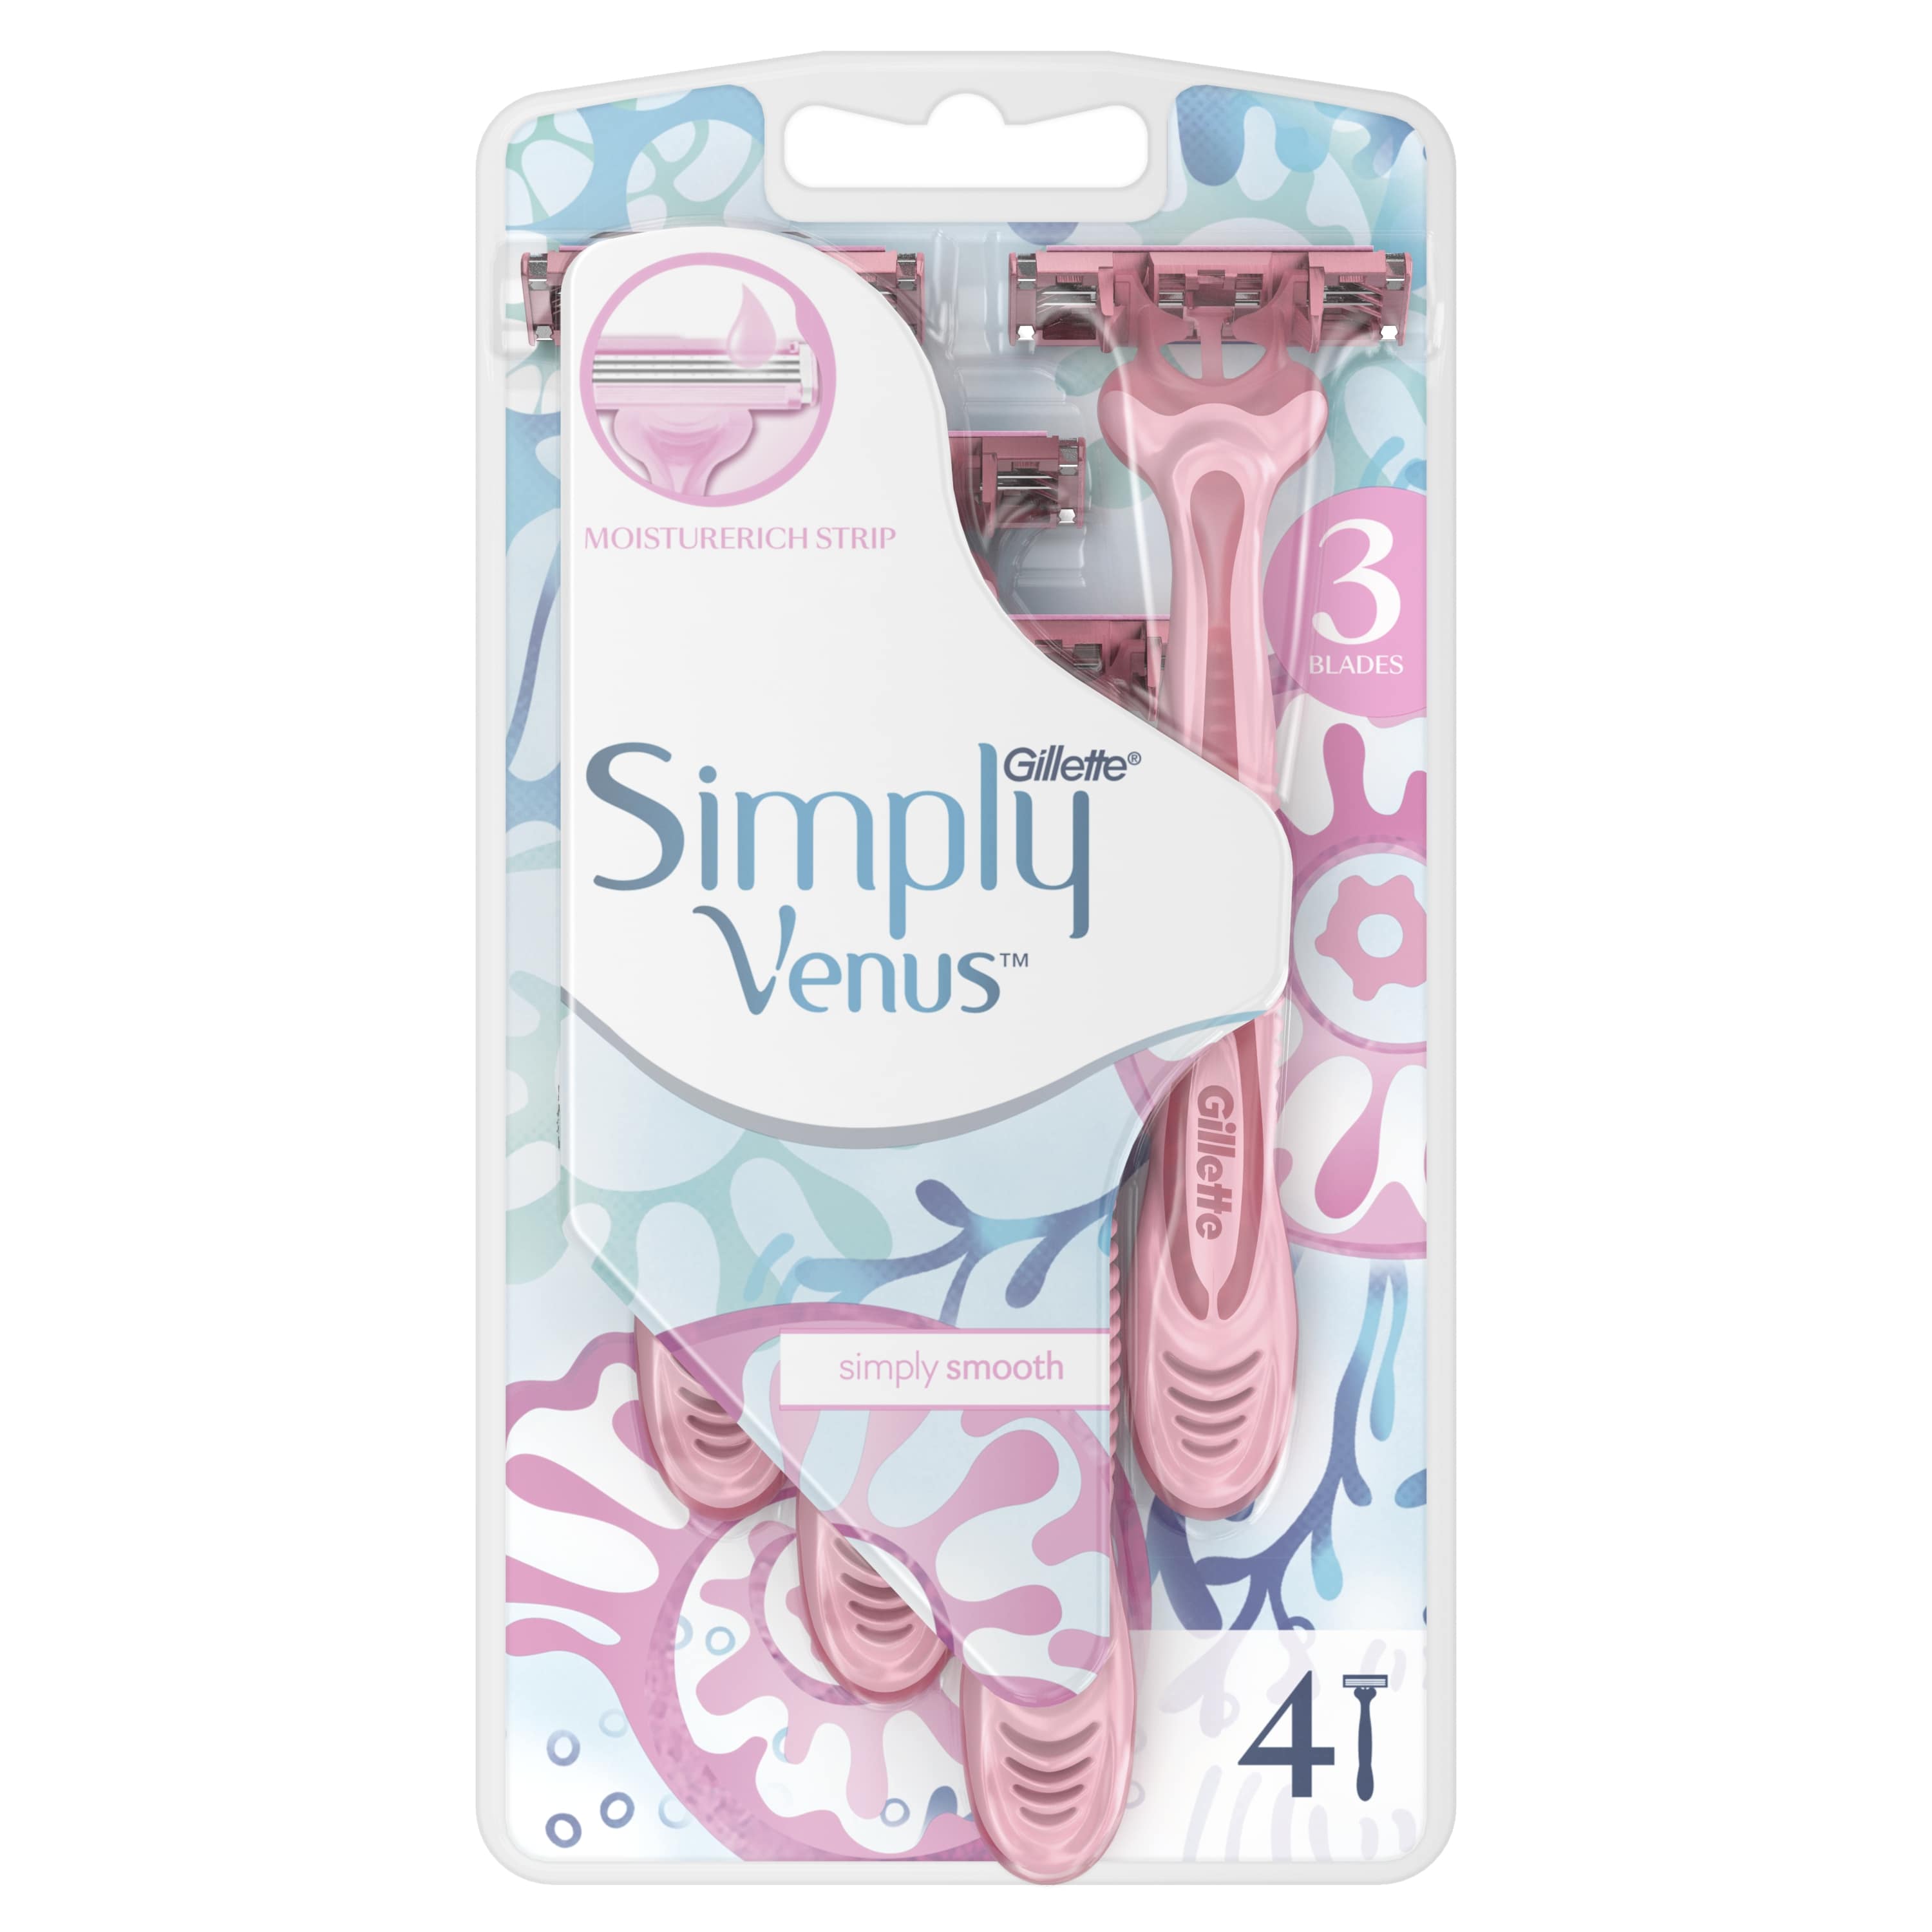 Станок для бритья Venus Simply 3 безопасные одноразовые, 4 шт.